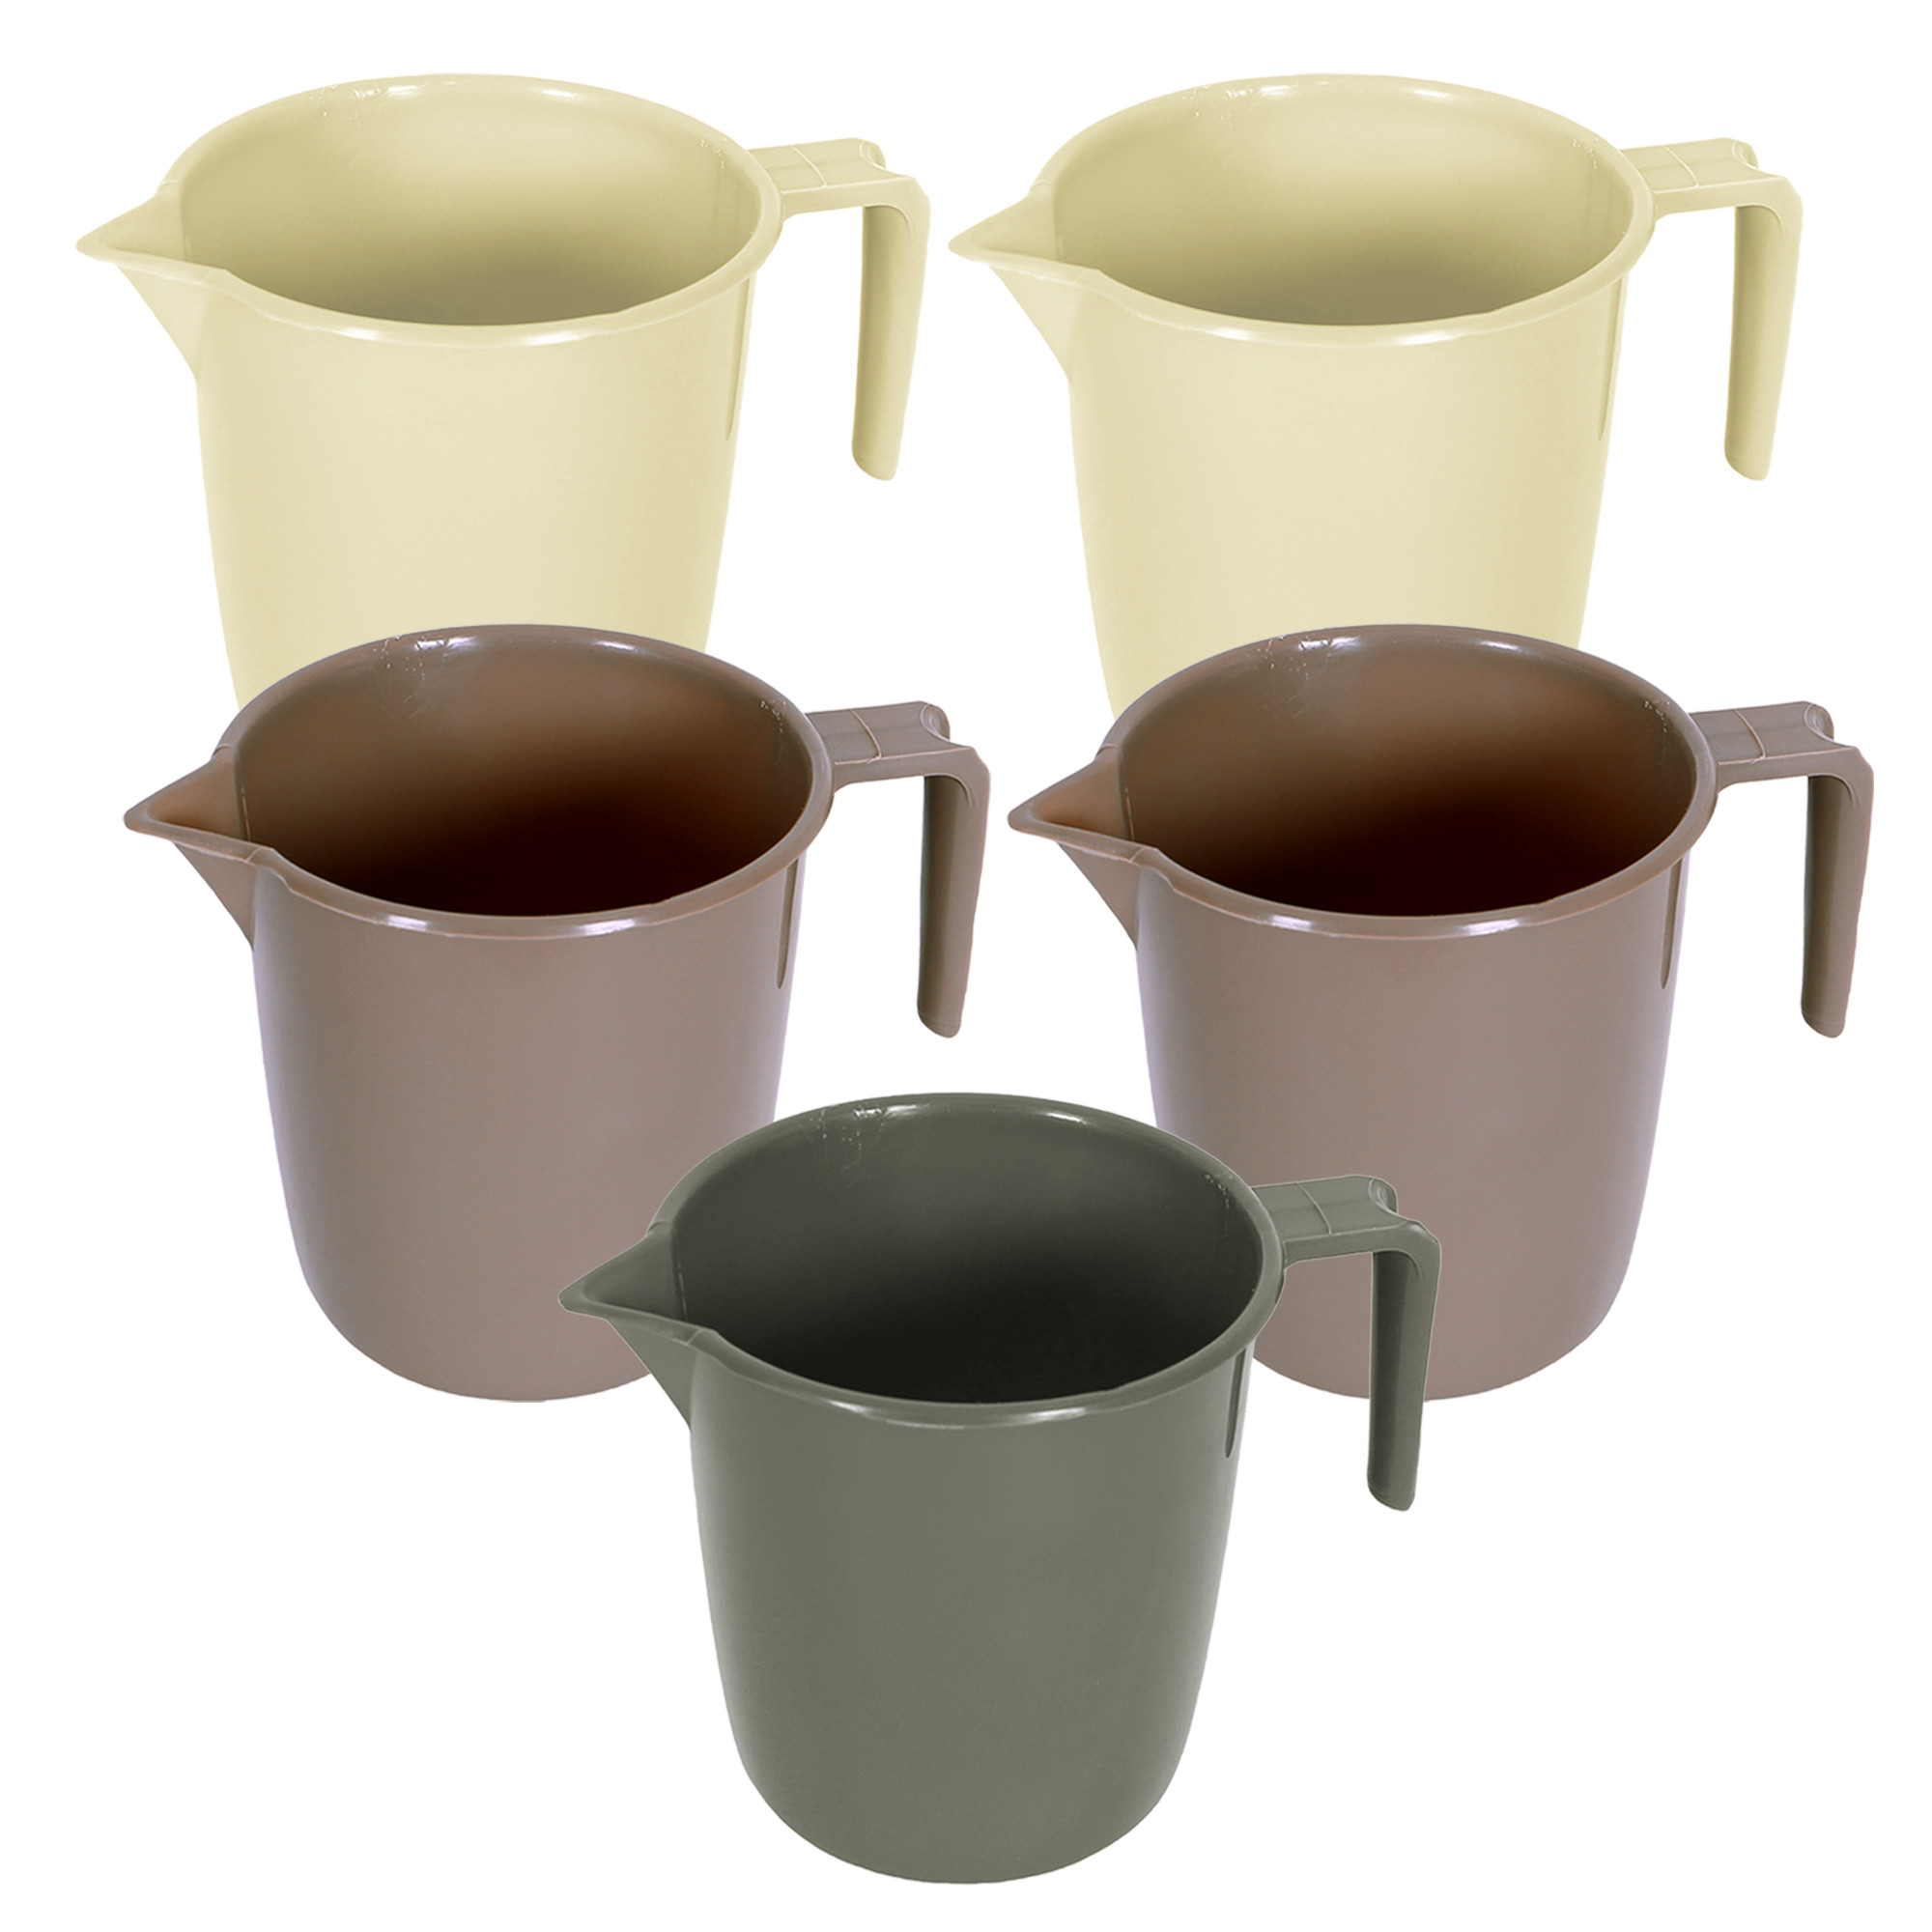 Kuber Industries Bathroom Mug | Plastic Bath Mug for Bathroom | Bath Mug | Mug for Bathroom | Mug for Toilet | Washroom Jug | 111 Bath Mug | 1 LTR | Pack of 5 | Multi